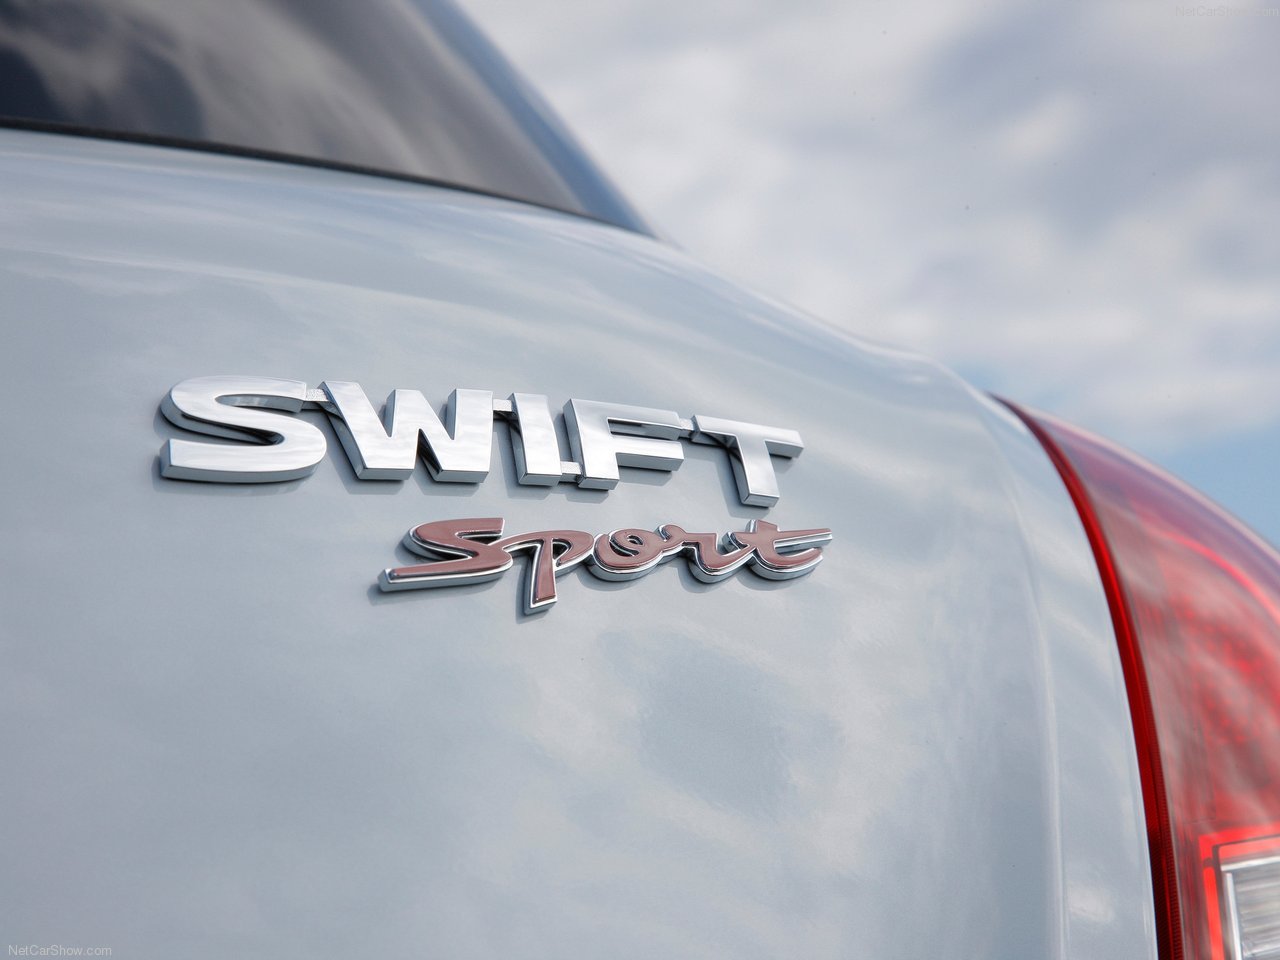 Otomotif Roda Empat: Suzuki Swift Sport Macho!